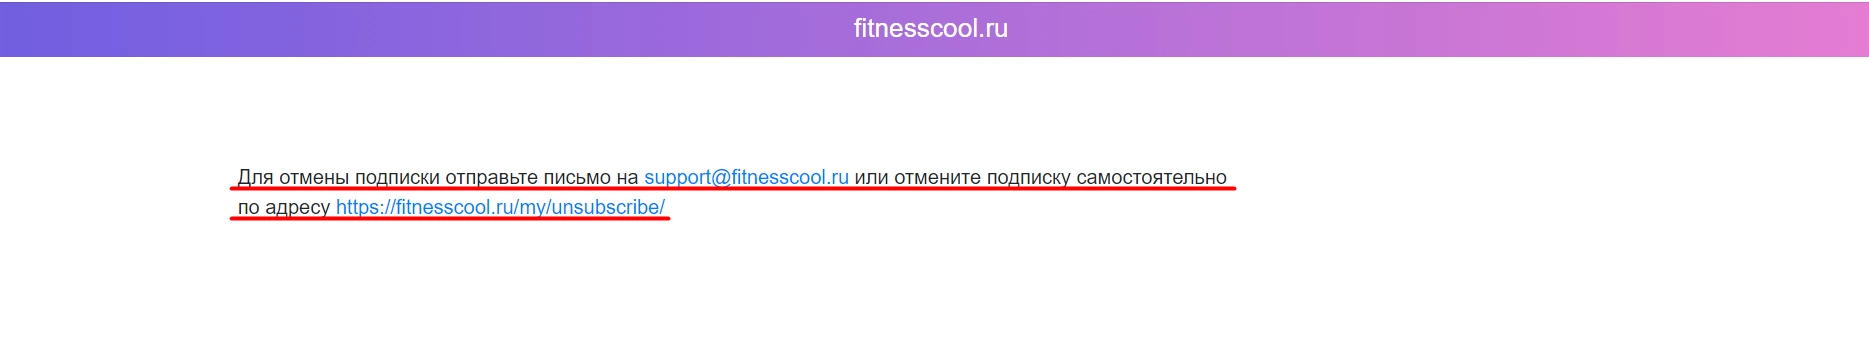 FitnessCool.ru отписаться